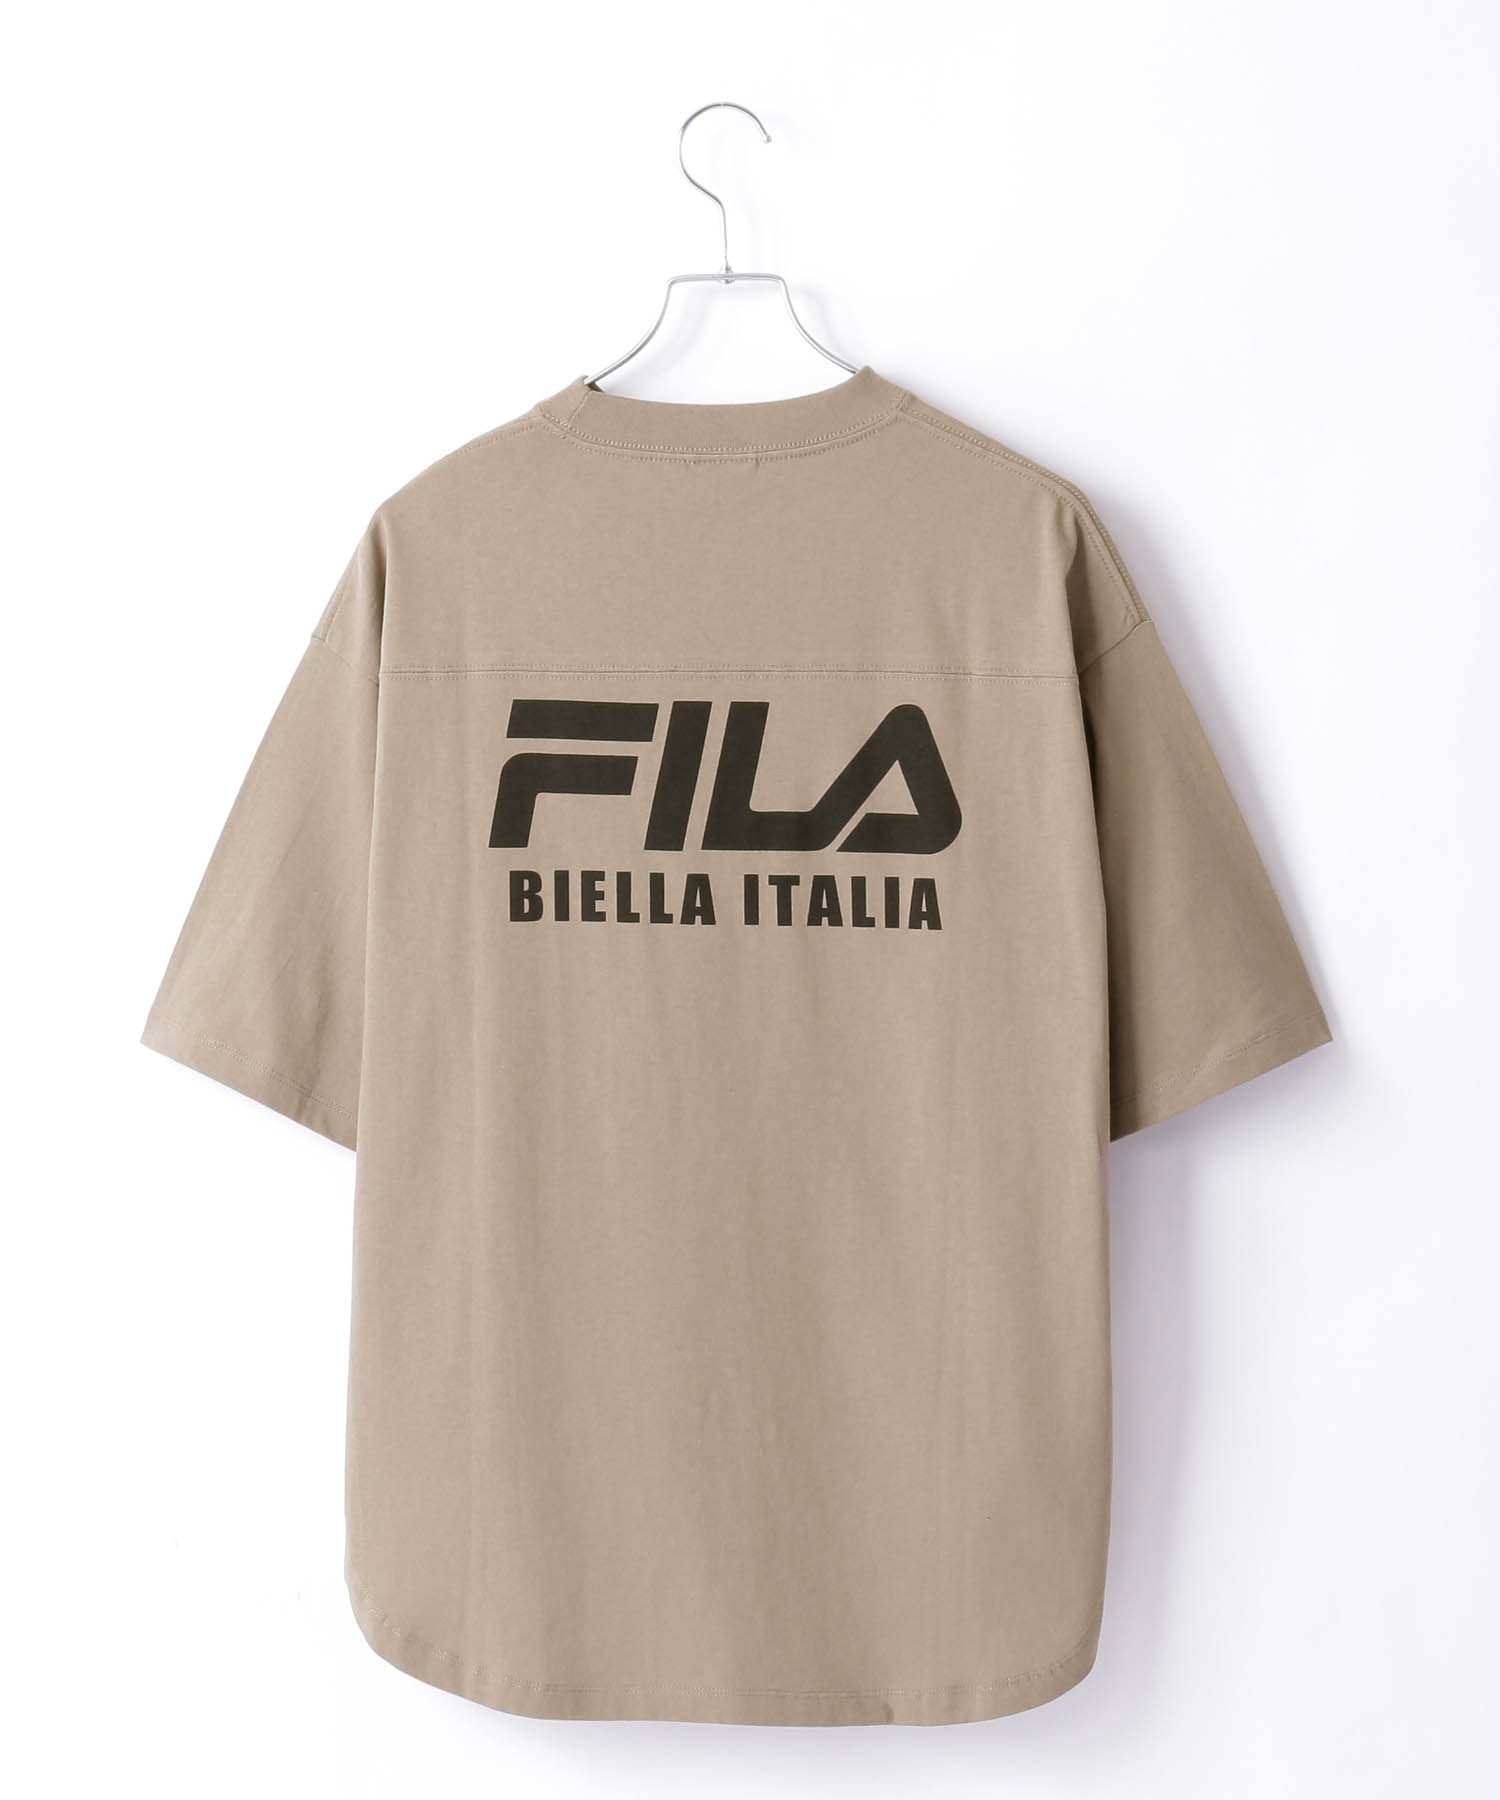 FILA フィラ メンズフロント ロゴ ビック サイズ 半袖 Tシャツ